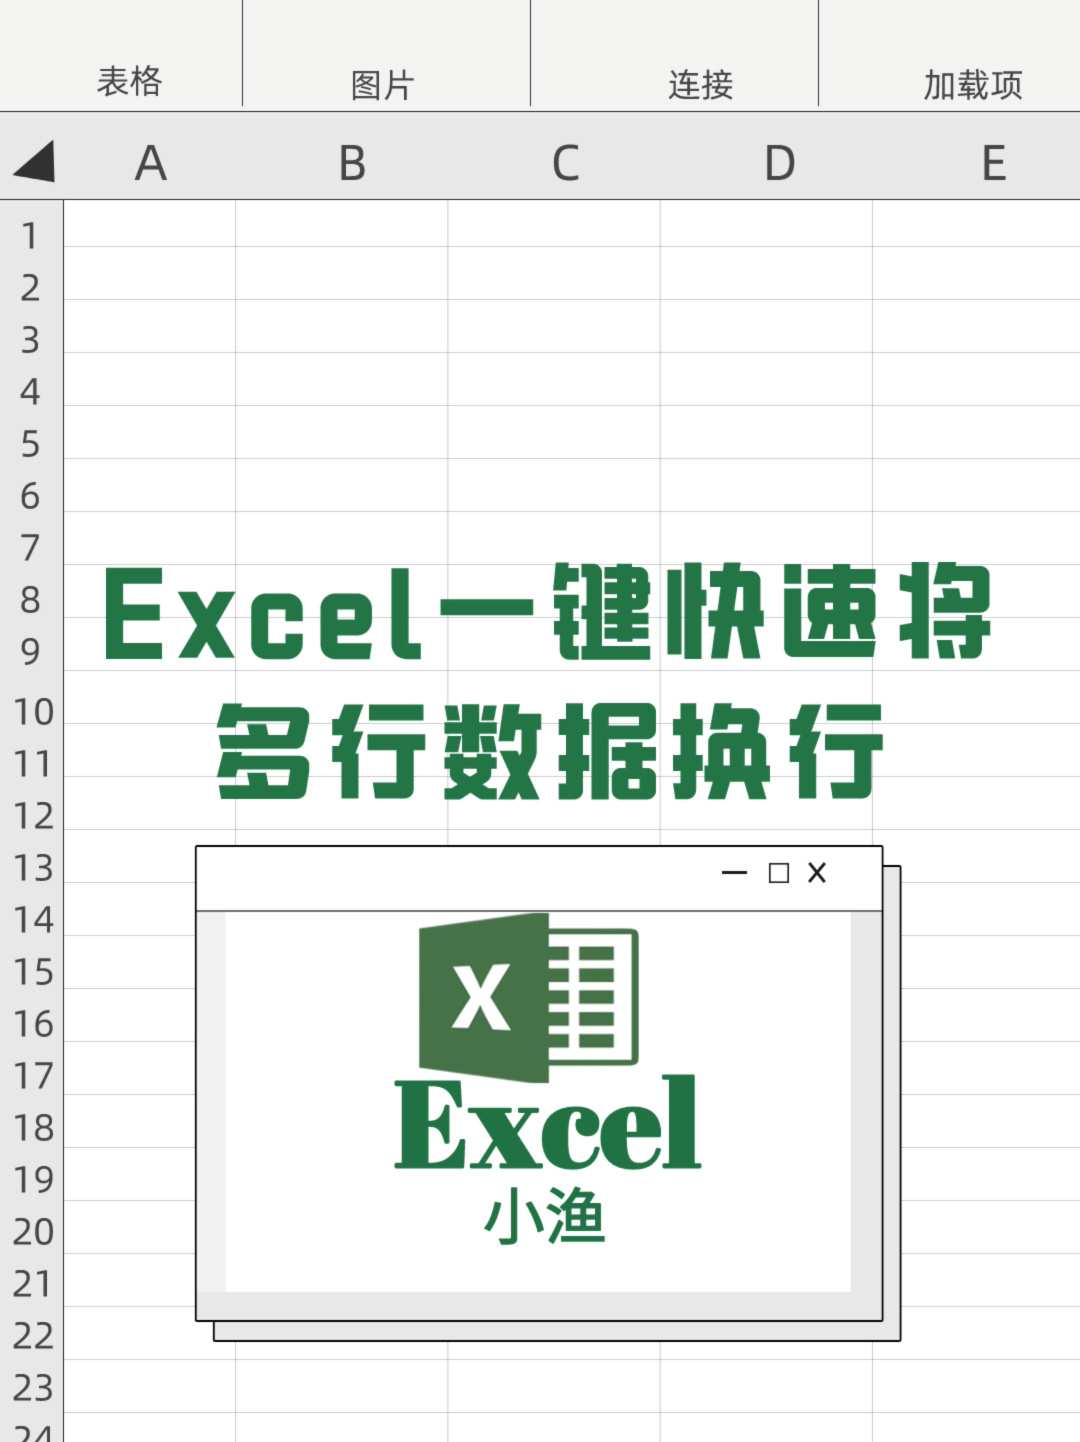 Excel一键调整所有表格间距，内容全部显示完整，日常办公常用到